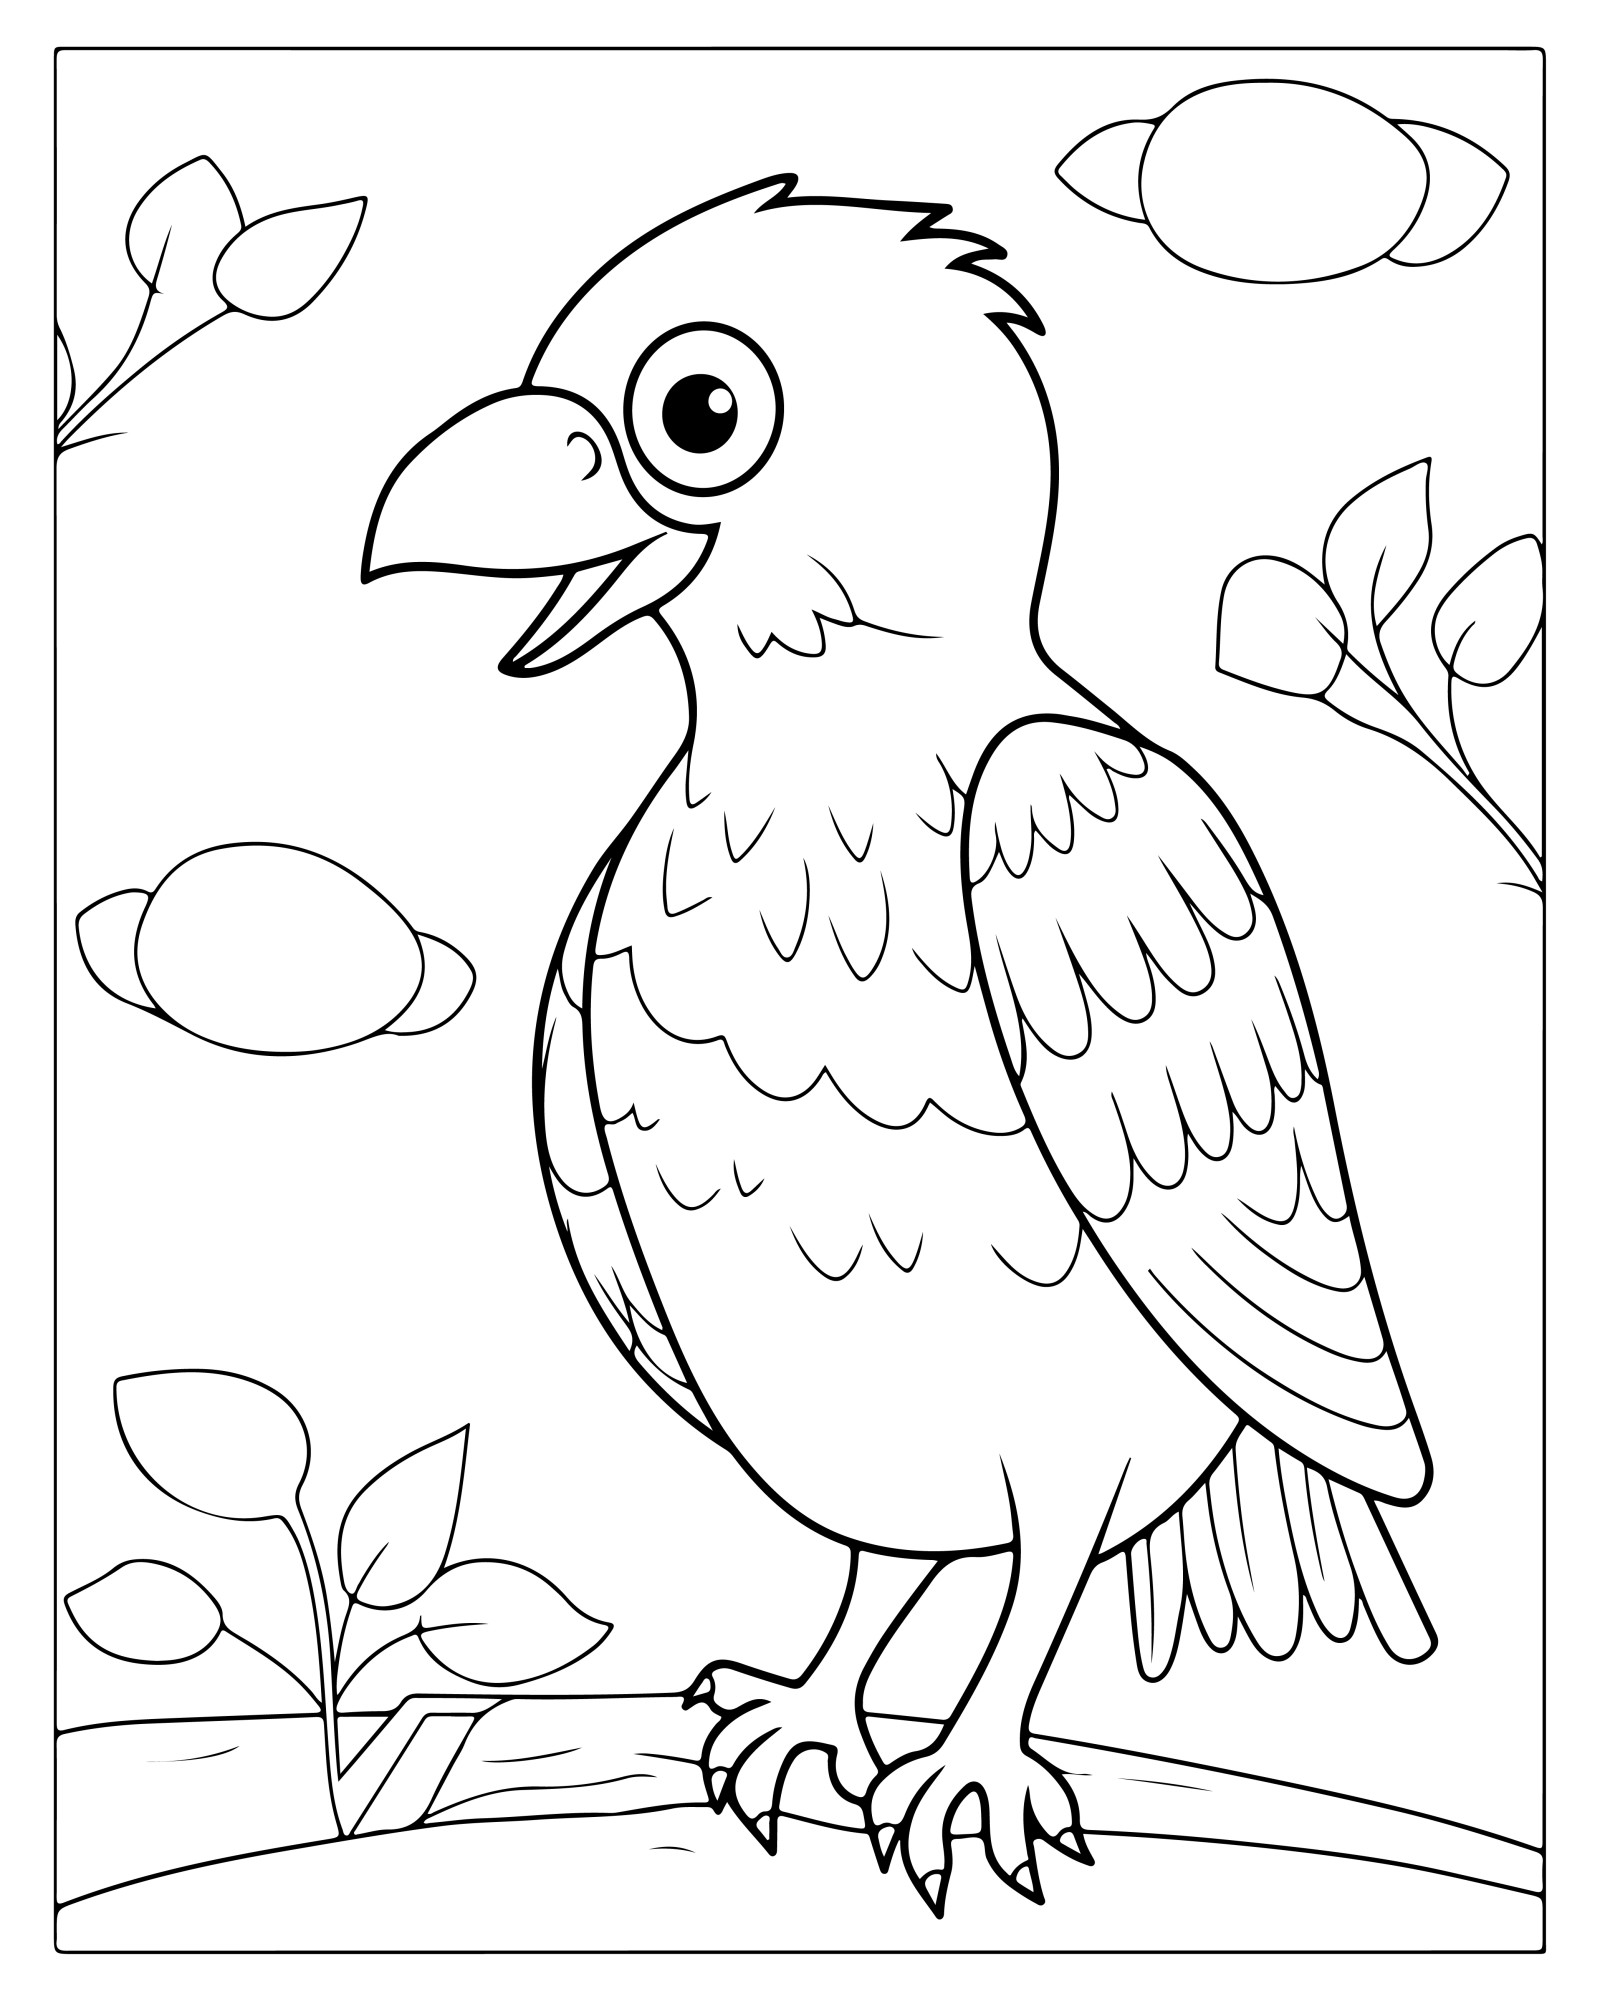 Раскраска для детей: птица с открытым клювом на ветке дерева